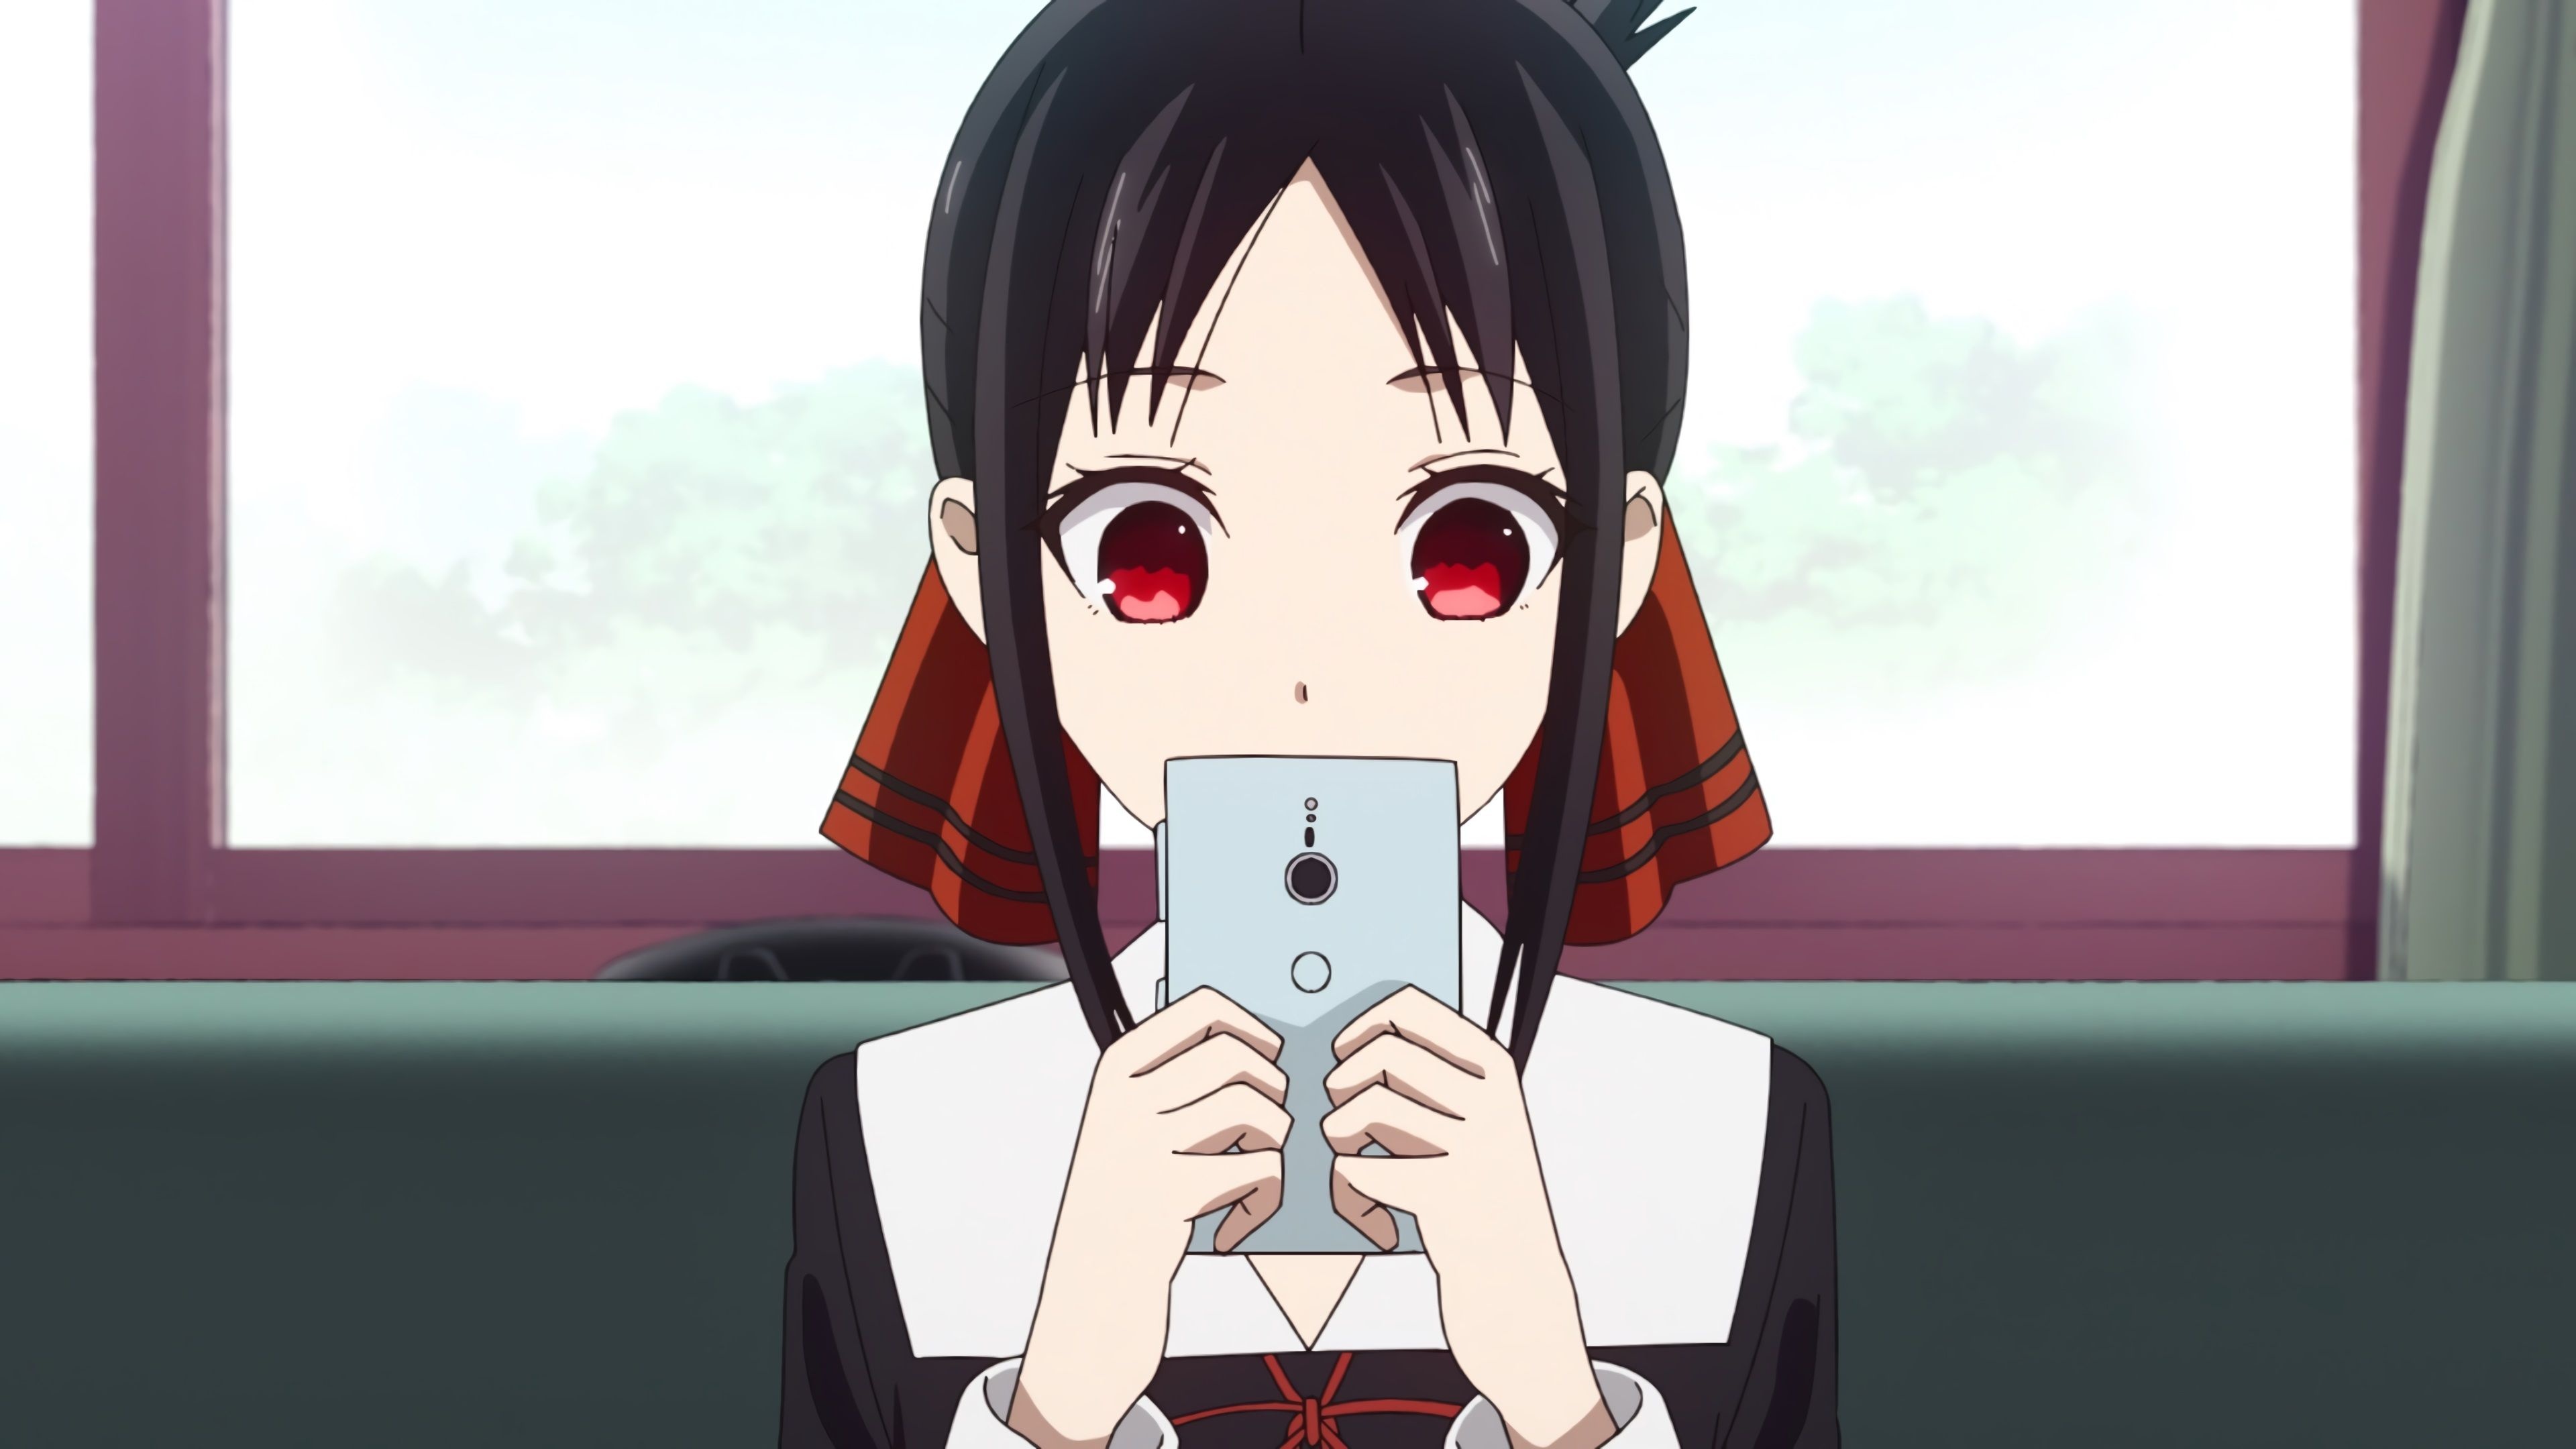 Kaguya Shinomiya, Anime character, Intricate artwork, Emotional expression, 3840x2160 4K Desktop